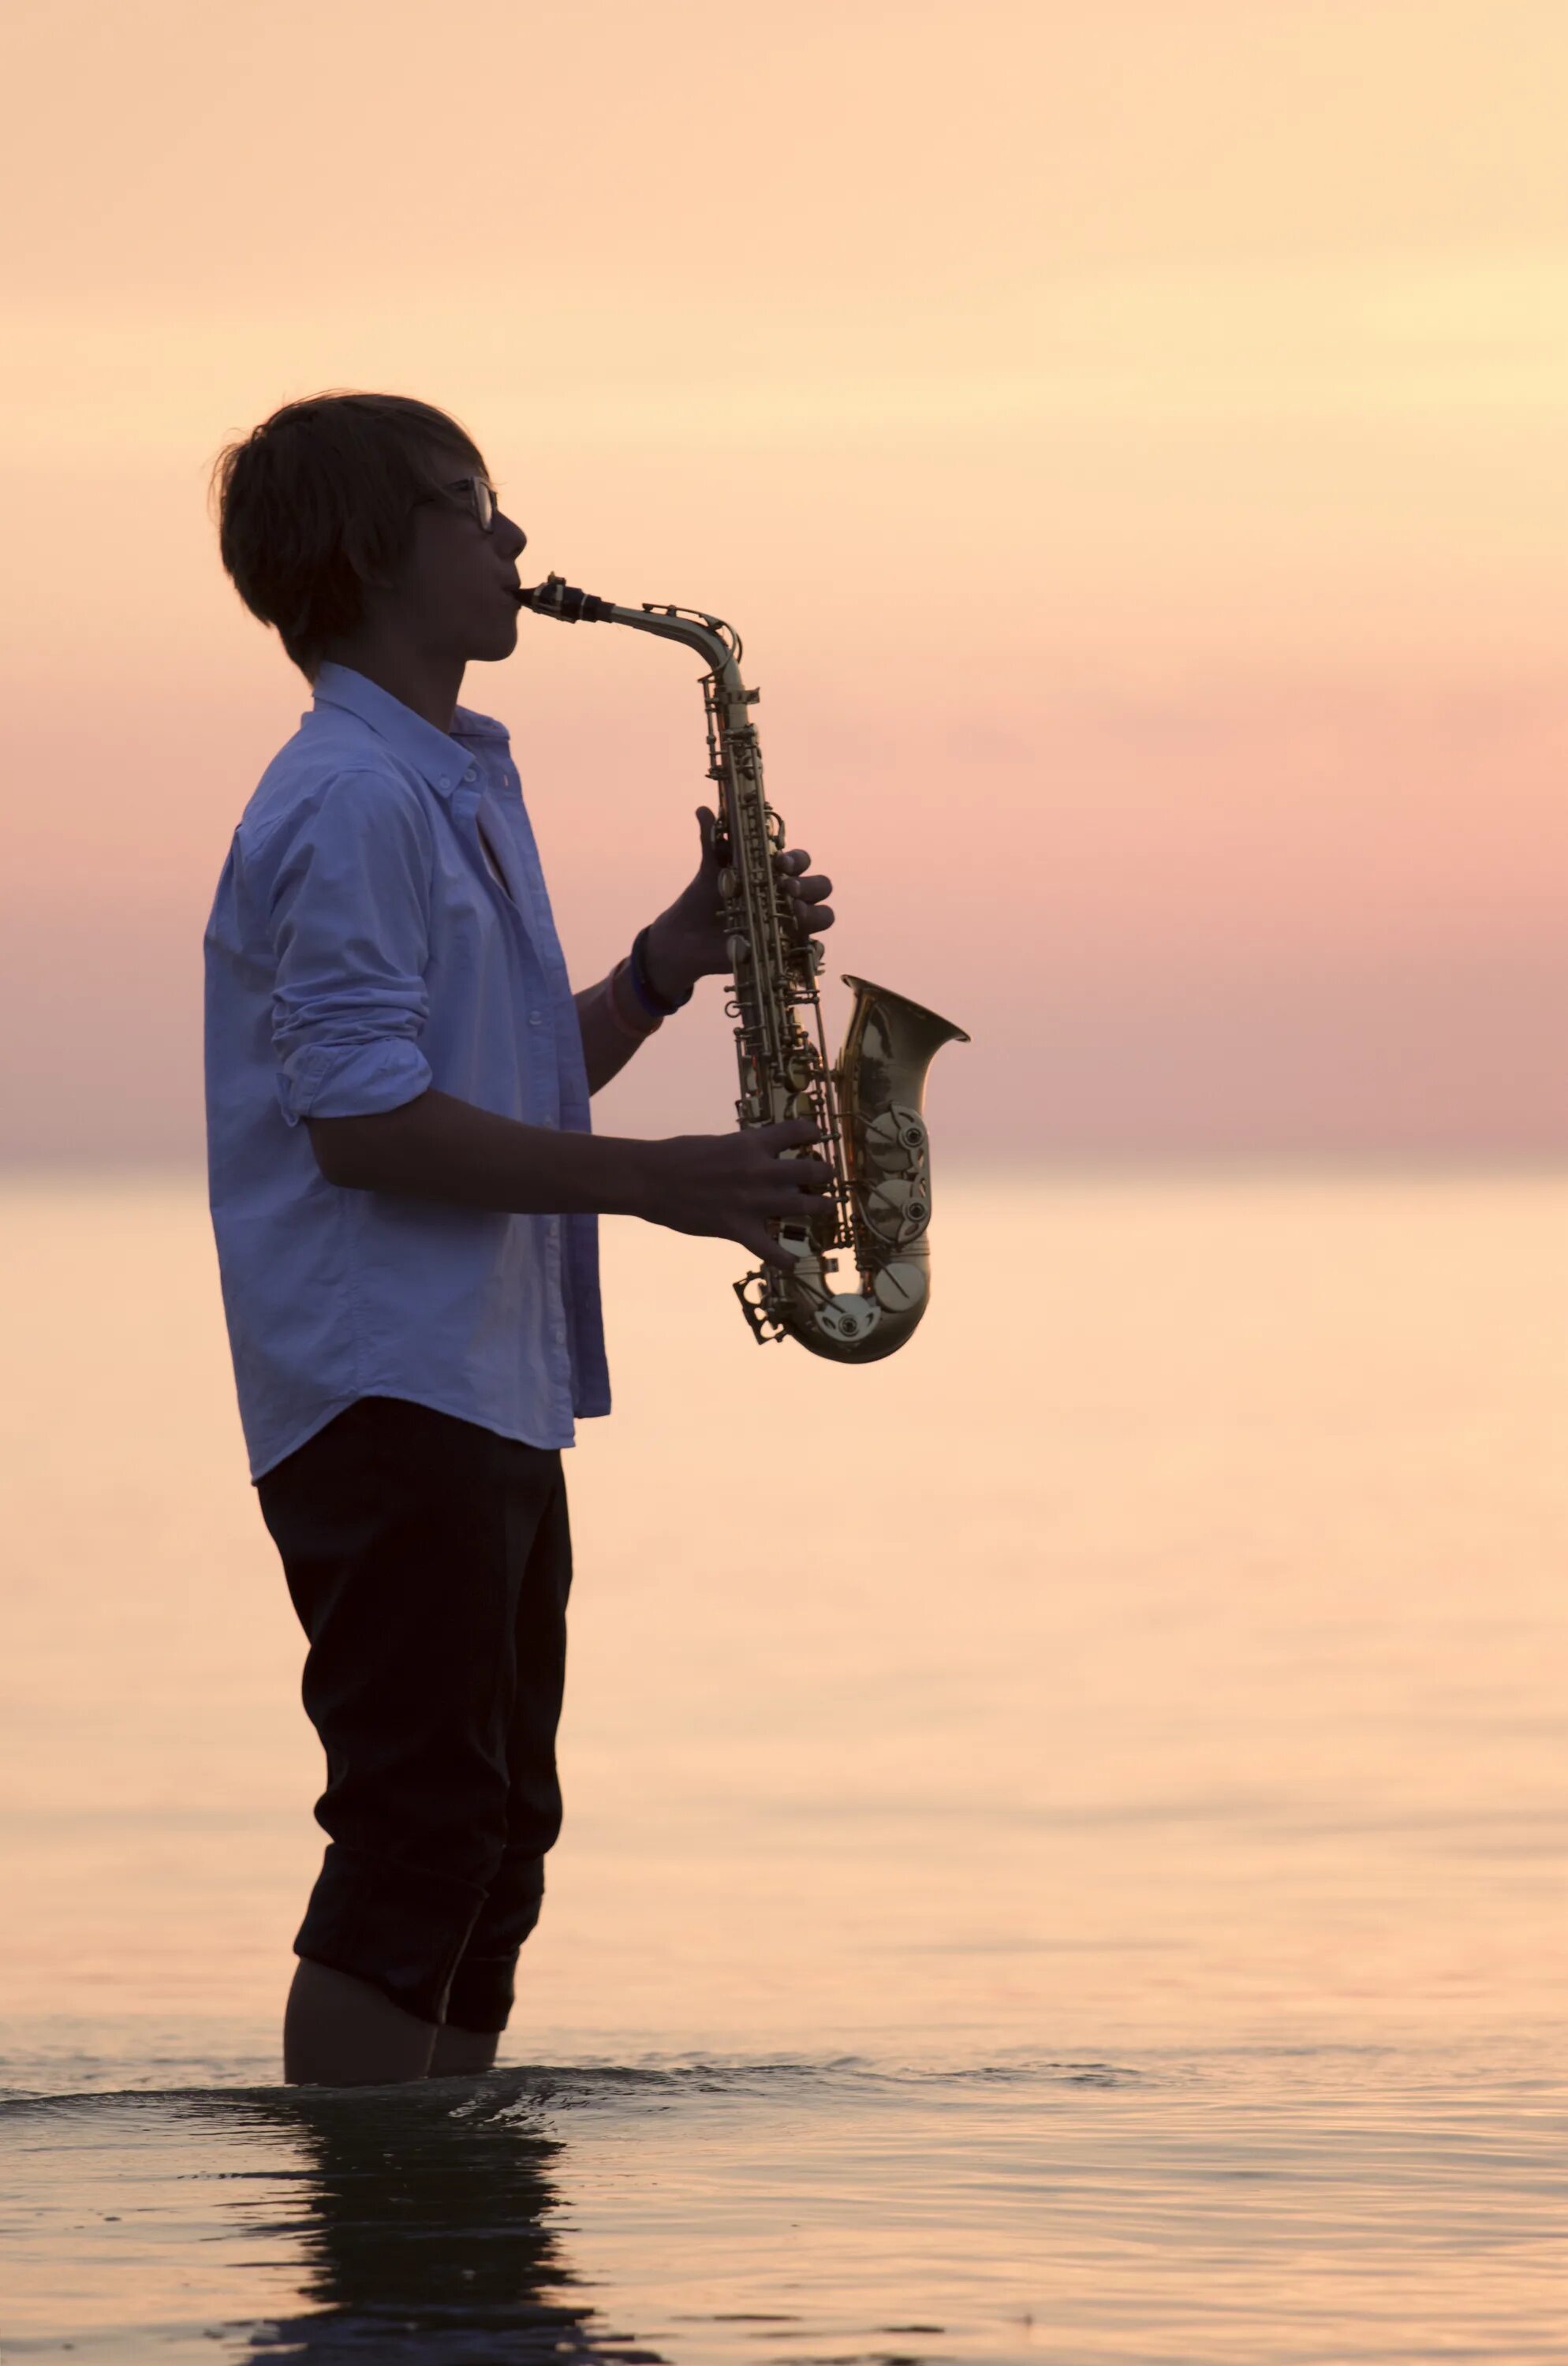 Playing saxophone. Саксофон. Саксофонист на море. Человек с саксофоном. Мужчина играющий на саксофоне.